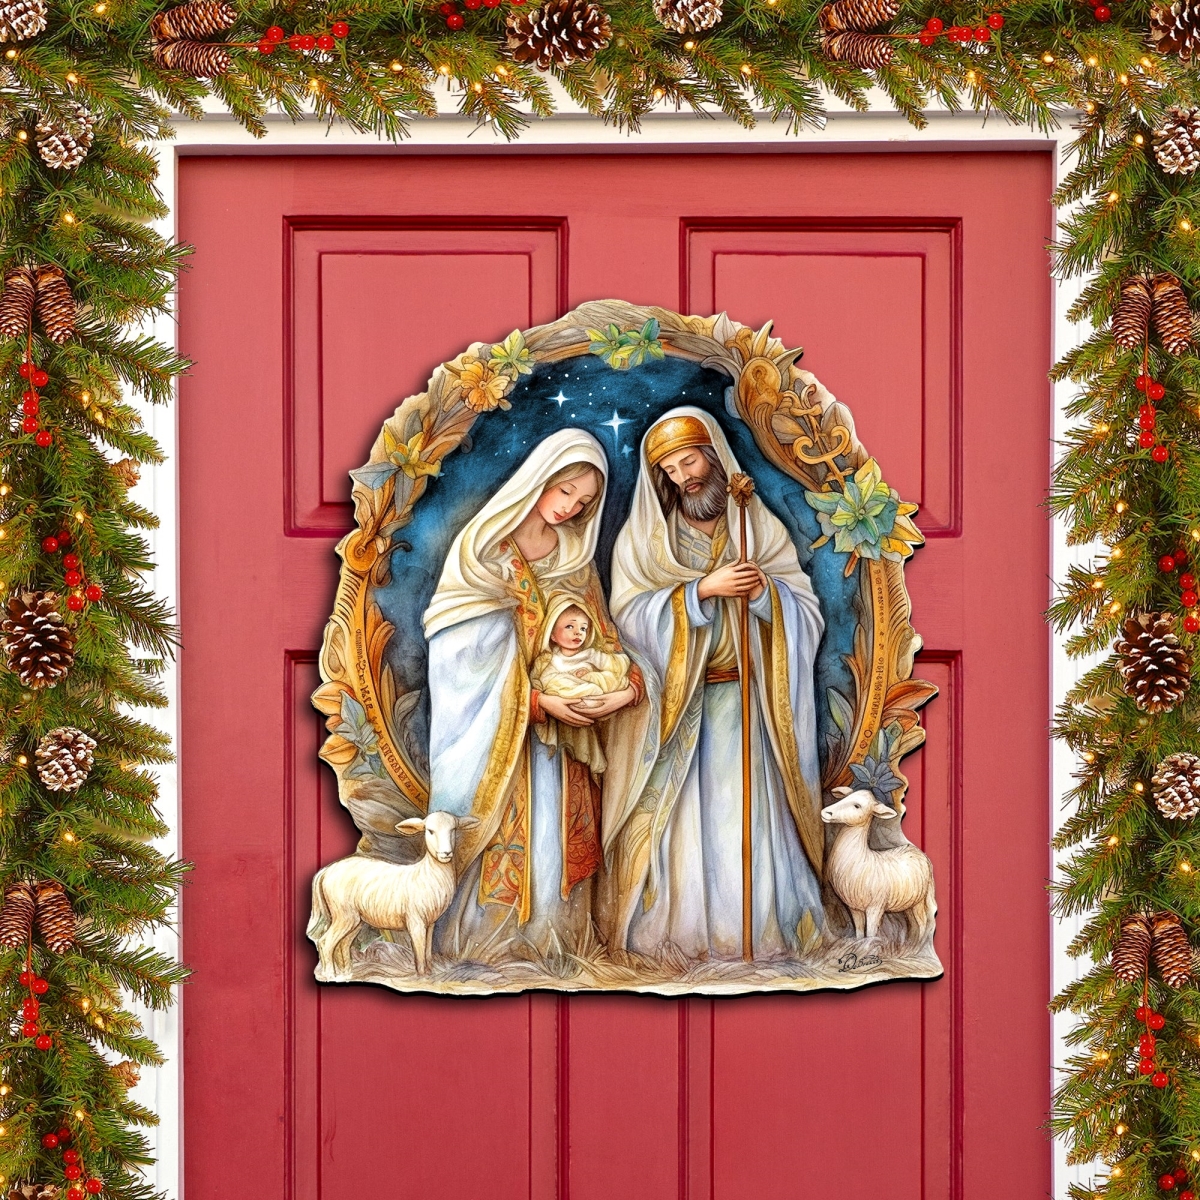 Clean Choice 24 x 18 in. Nostalgic Nativity Scene Holiday Nativity Holiday Door Decor